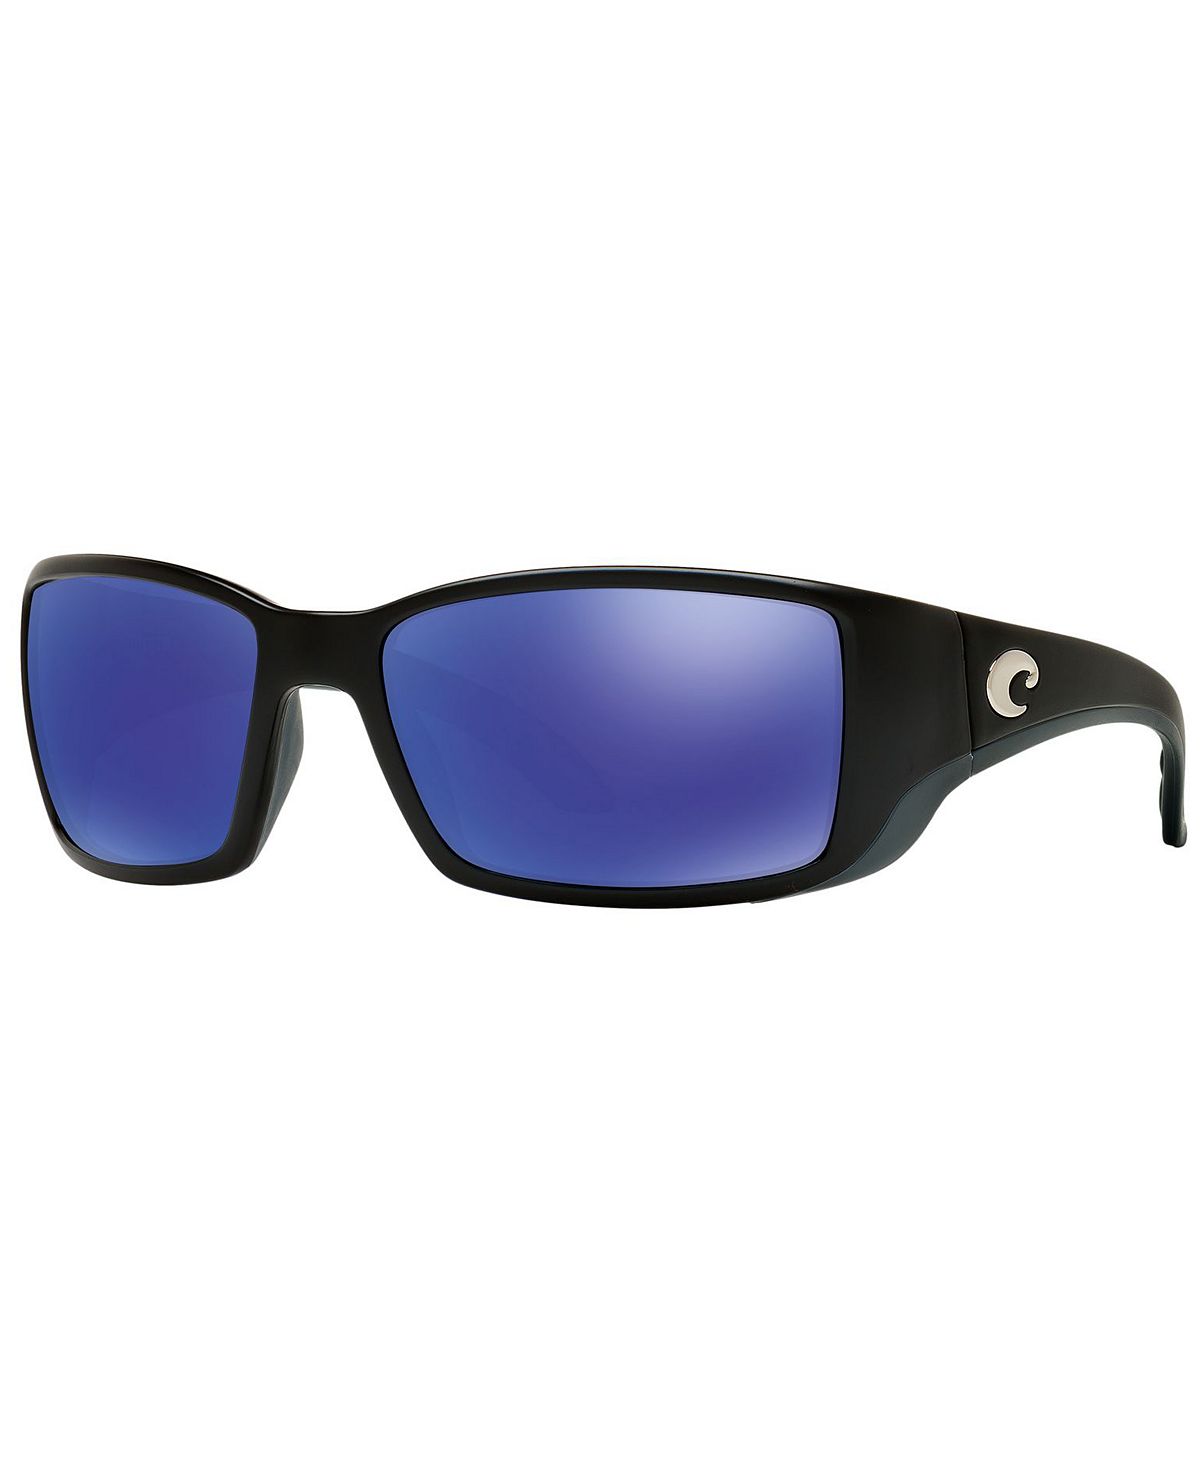 Поляризационные солнцезащитные очки, BLACKFIN 06S000003 62P Costa Del Mar